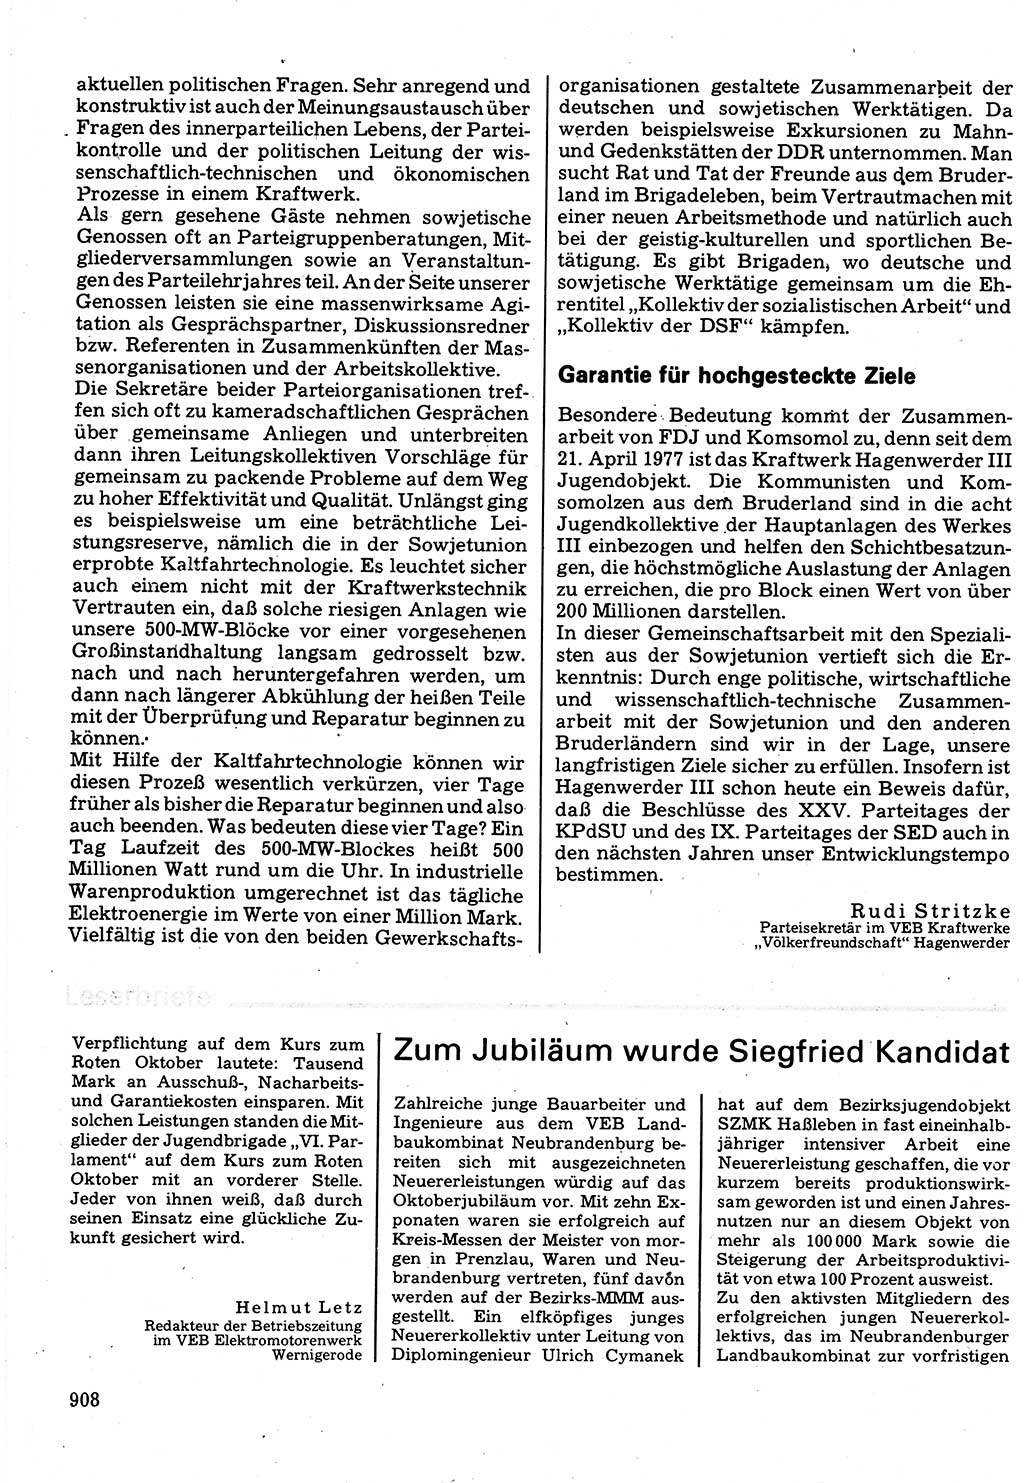 Neuer Weg (NW), Organ des Zentralkomitees (ZK) der SED (Sozialistische Einheitspartei Deutschlands) für Fragen des Parteilebens, 32. Jahrgang [Deutsche Demokratische Republik (DDR)] 1977, Seite 908 (NW ZK SED DDR 1977, S. 908)